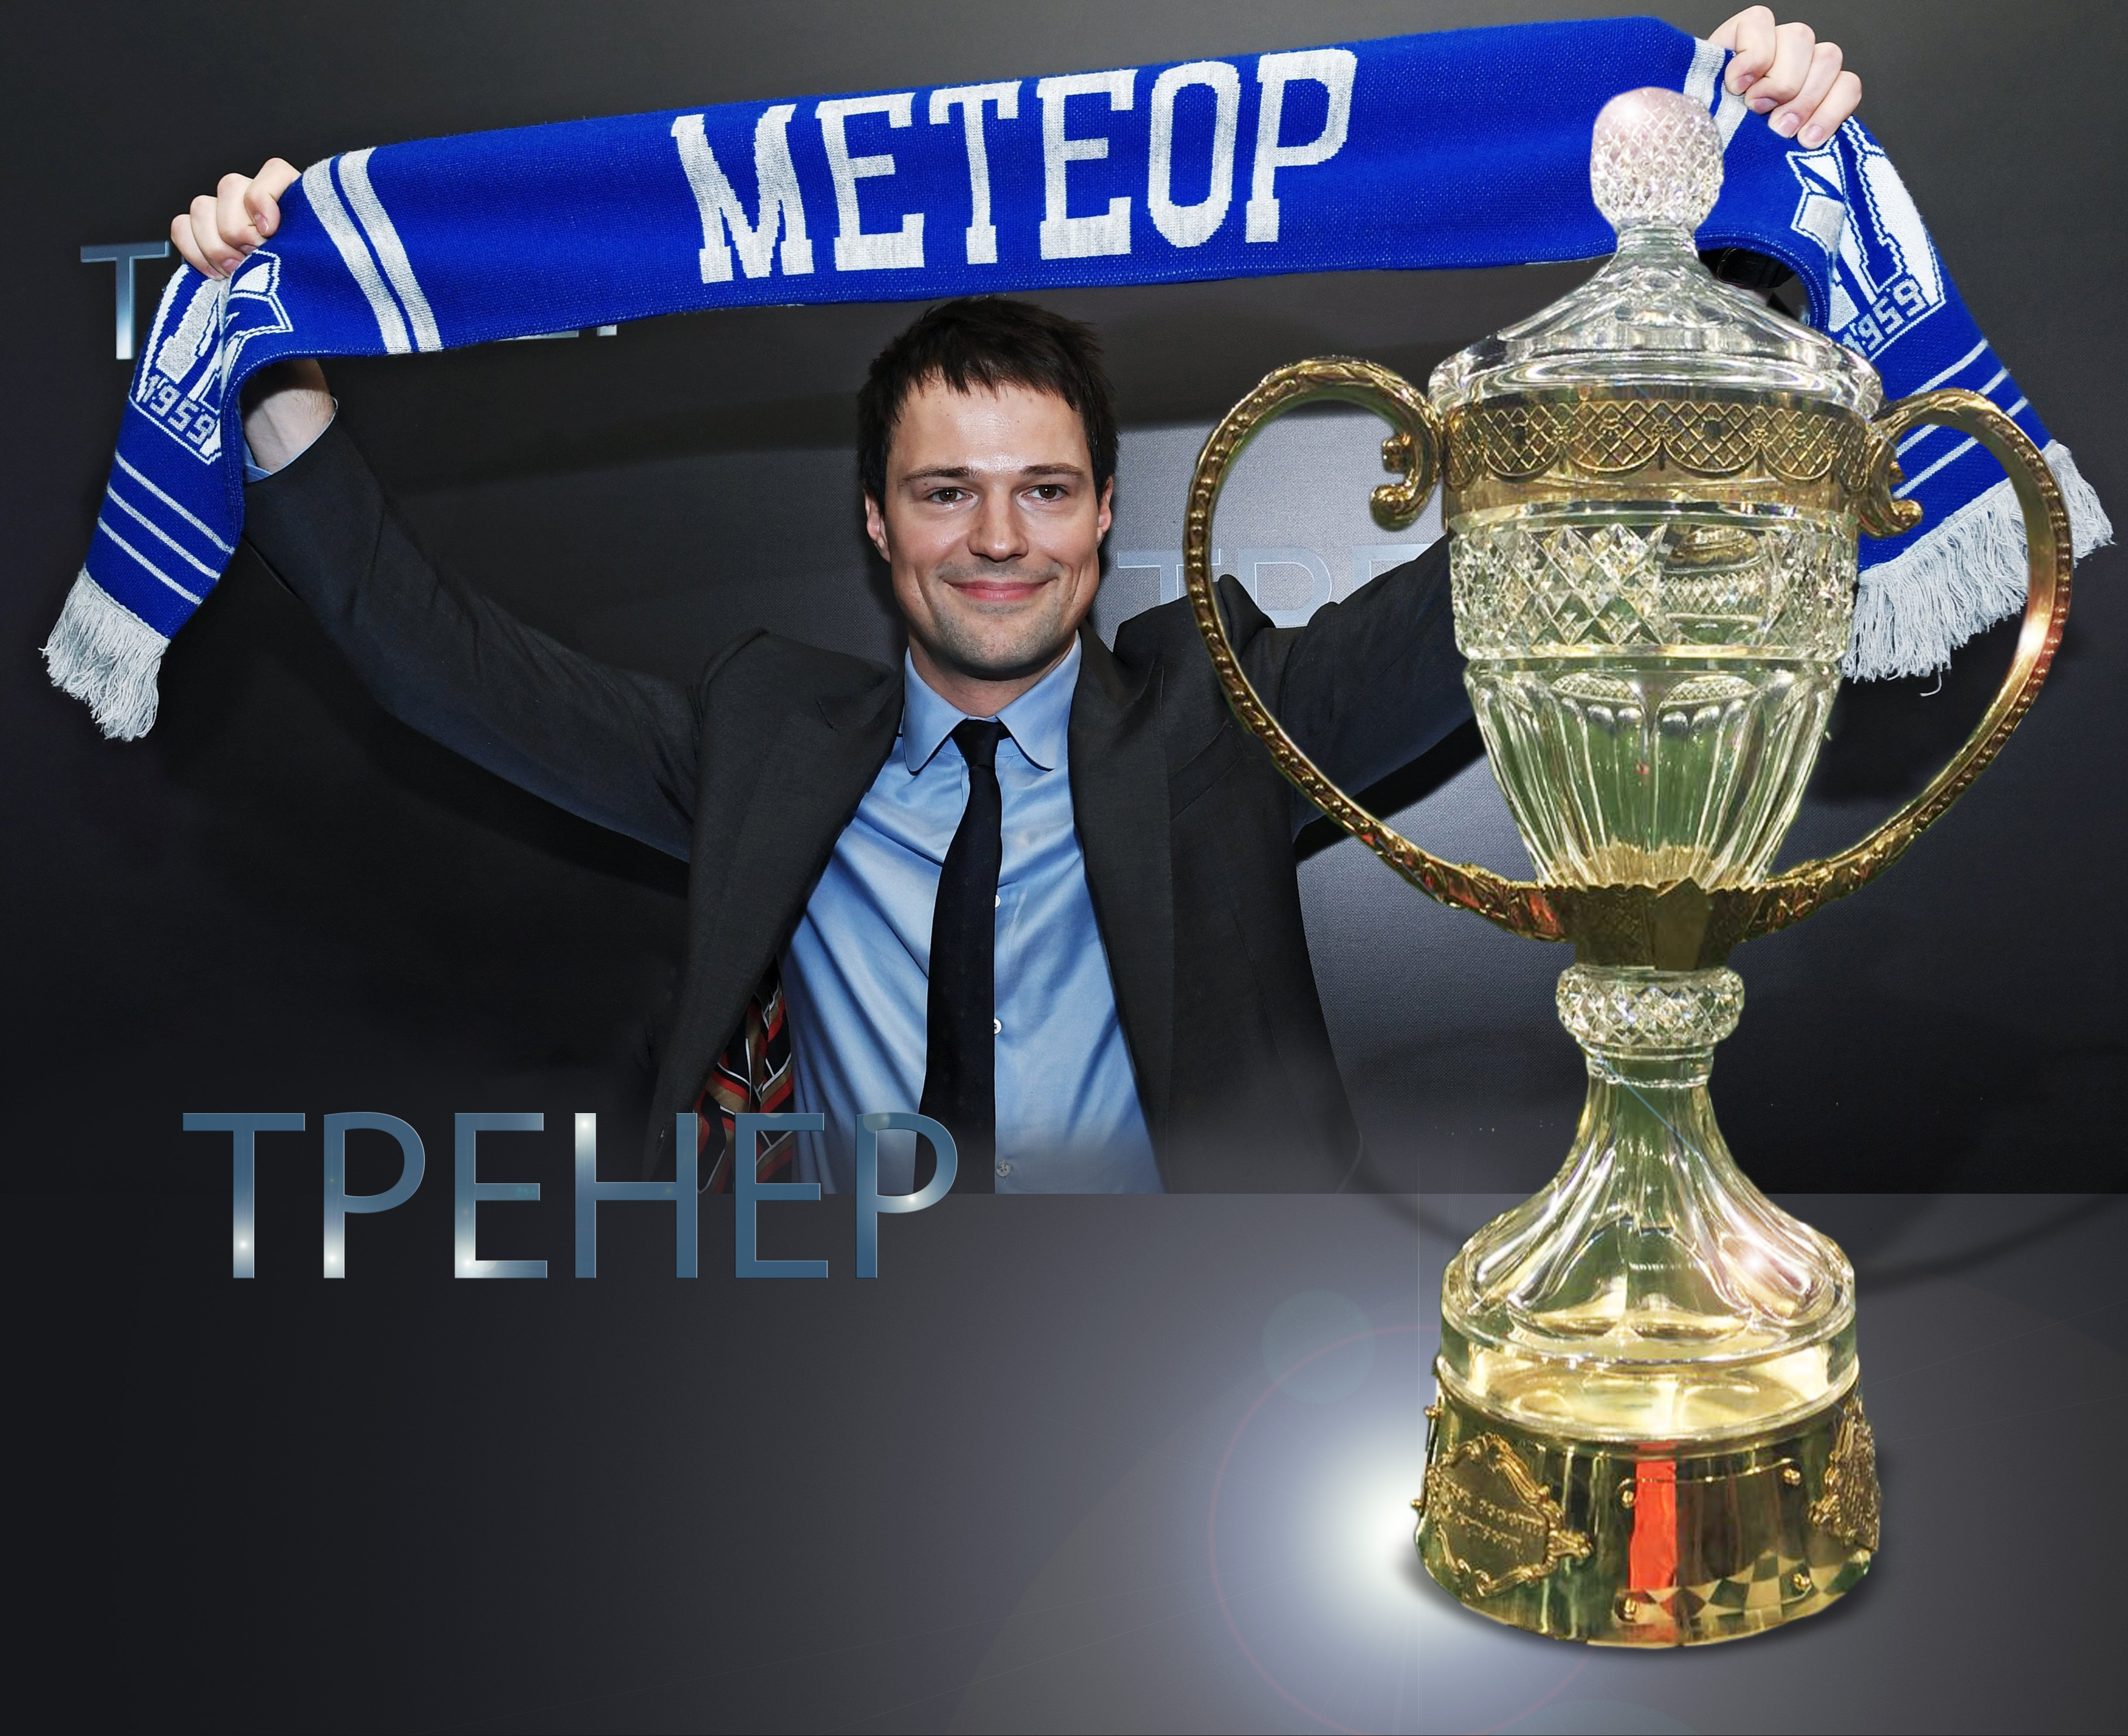 Кубок для картины «Тренер» Данилы Козловского был собран в студии ART4YOU